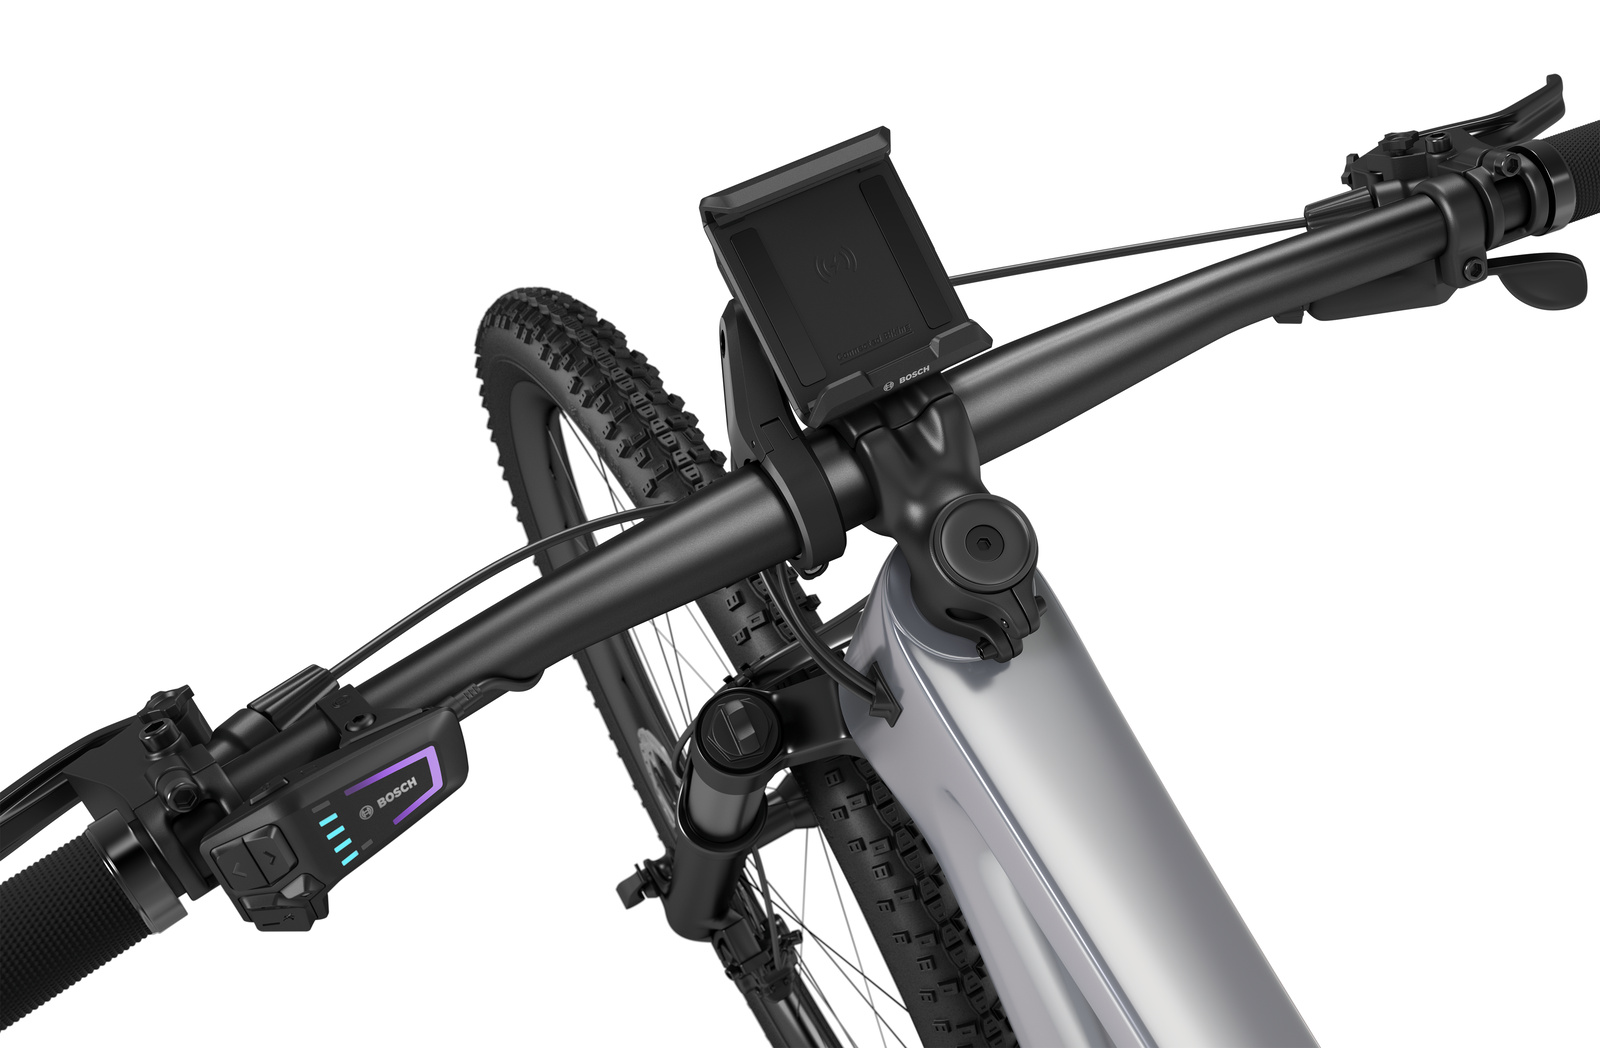 Bosch Smartphone Grip - KTM Bikes Onlineshop